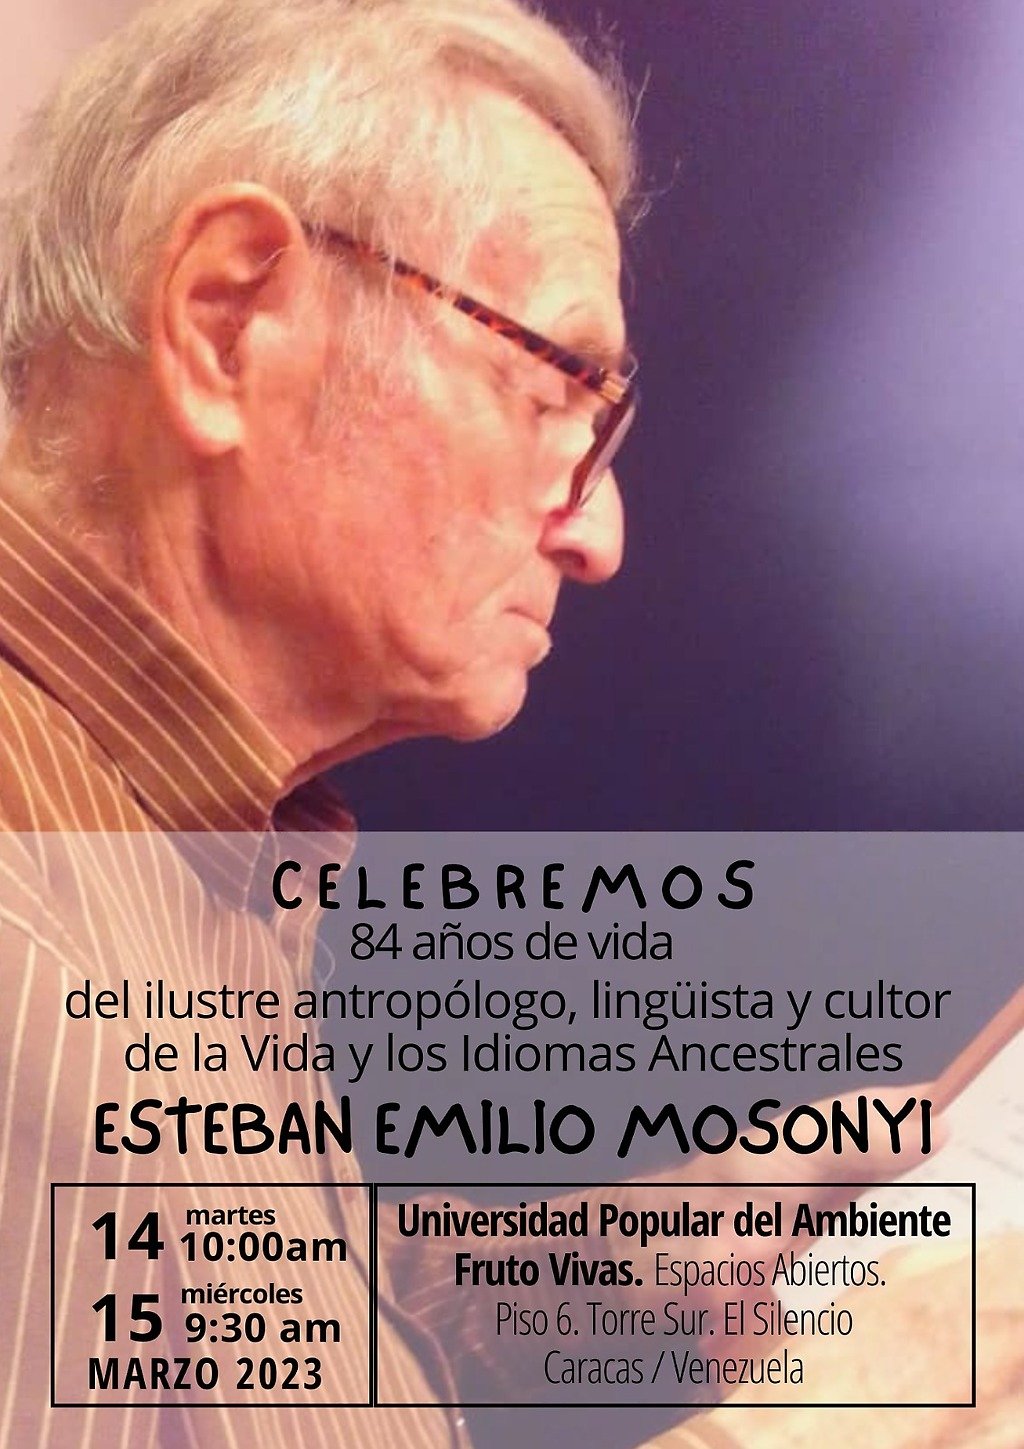 Celebremos el cumpleaños de Esteban Emilio Mosonyi